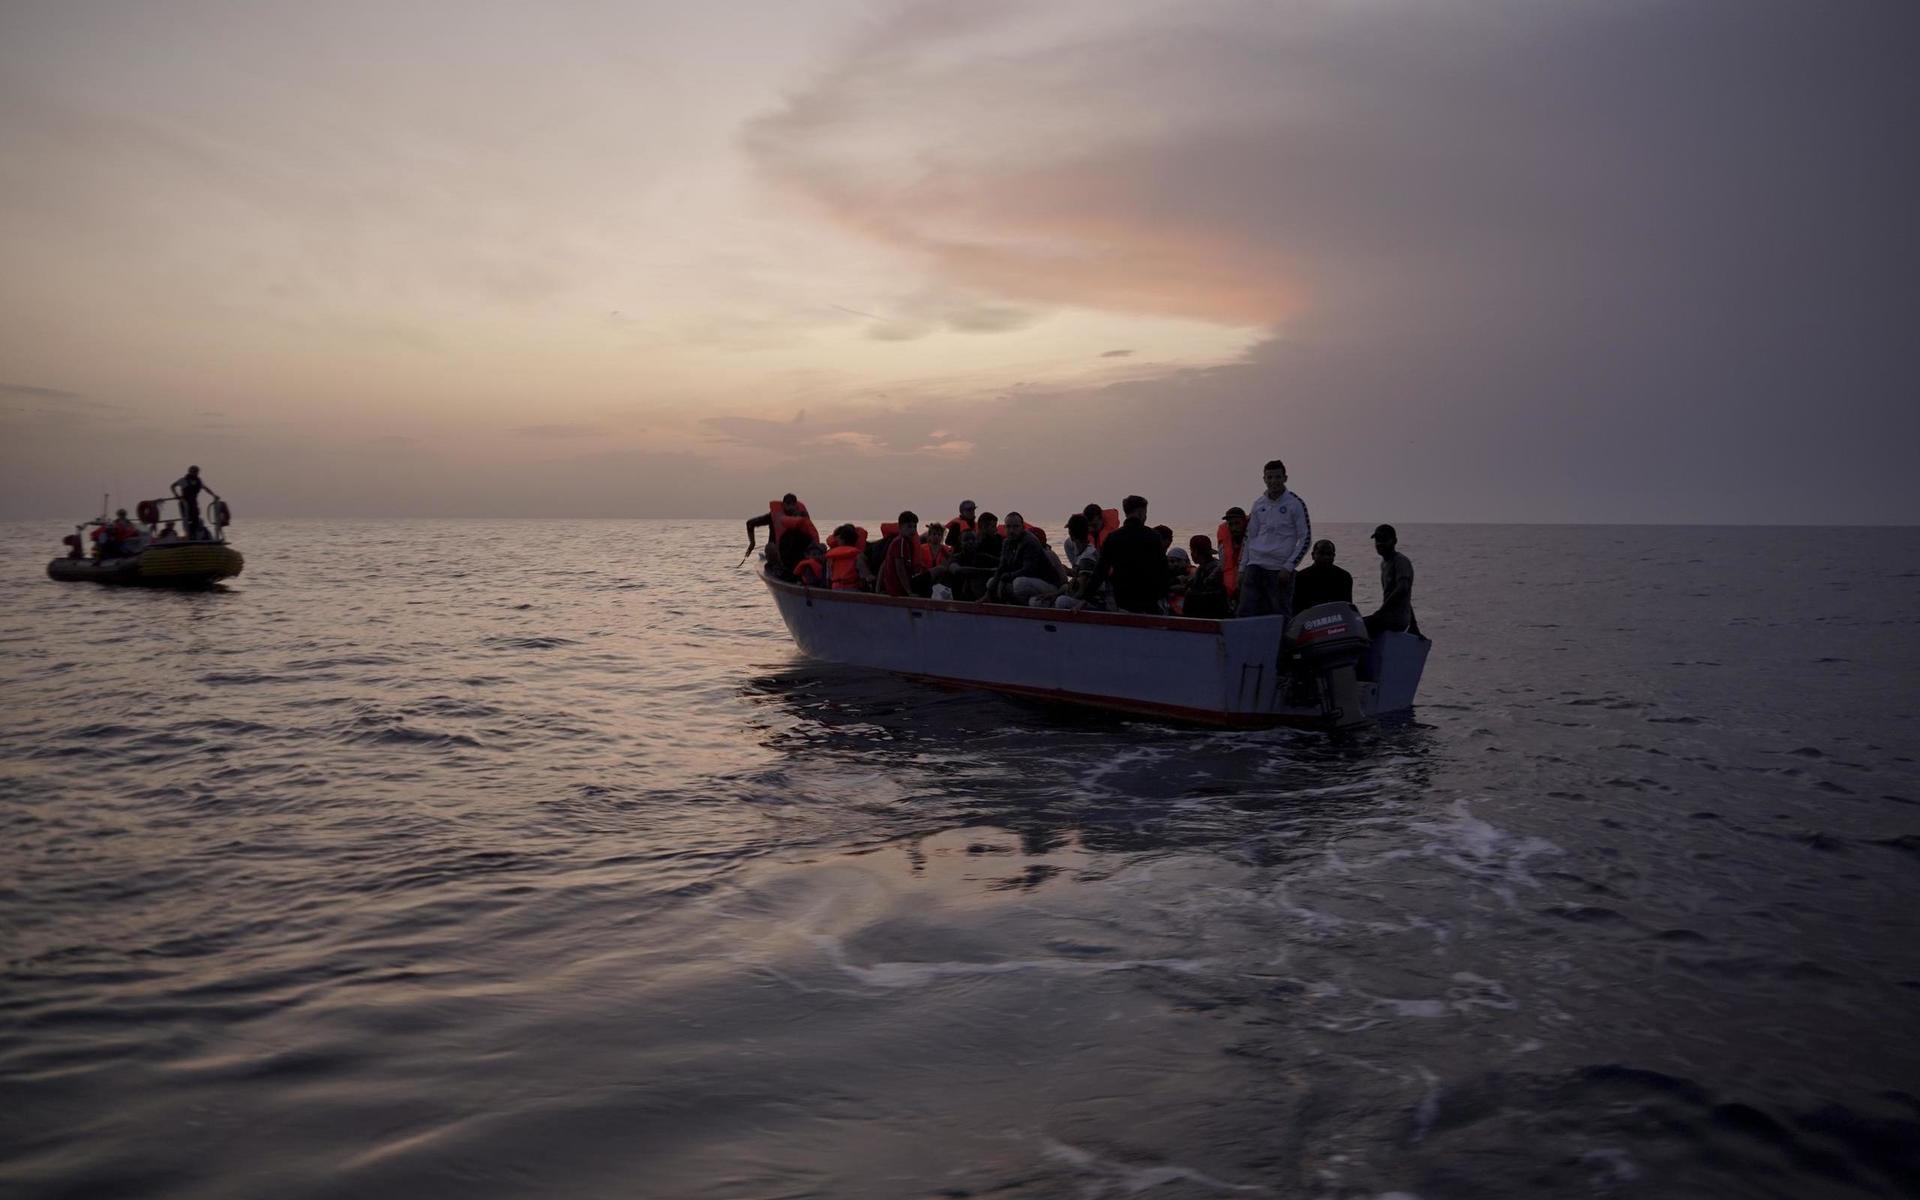 Över 2 200 migranter omkom i fjol när de försökte nå Europa via Medelhavet, enligt FN:s migrationsorgan IOM. Sedan årsskiftet har över 500 människor omkommit eller rapporterats som saknade sedan de försökt nå Europa via Medelhavet, uppskattar FN:s flyktingorgan UNHCR. Nära 24 000 migranter har lyckats ta sig över till Europa via Medelhavet under samma period. Arkivbild.